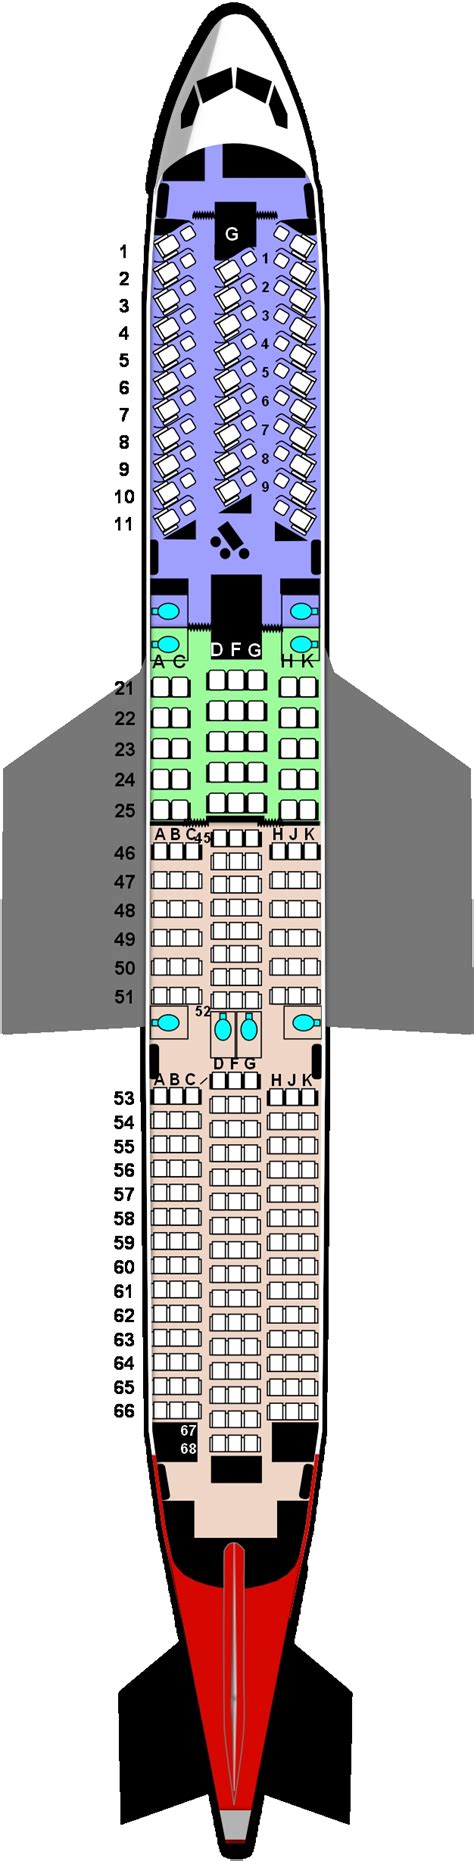 Boeing Dreamliner Seating Chart El Al